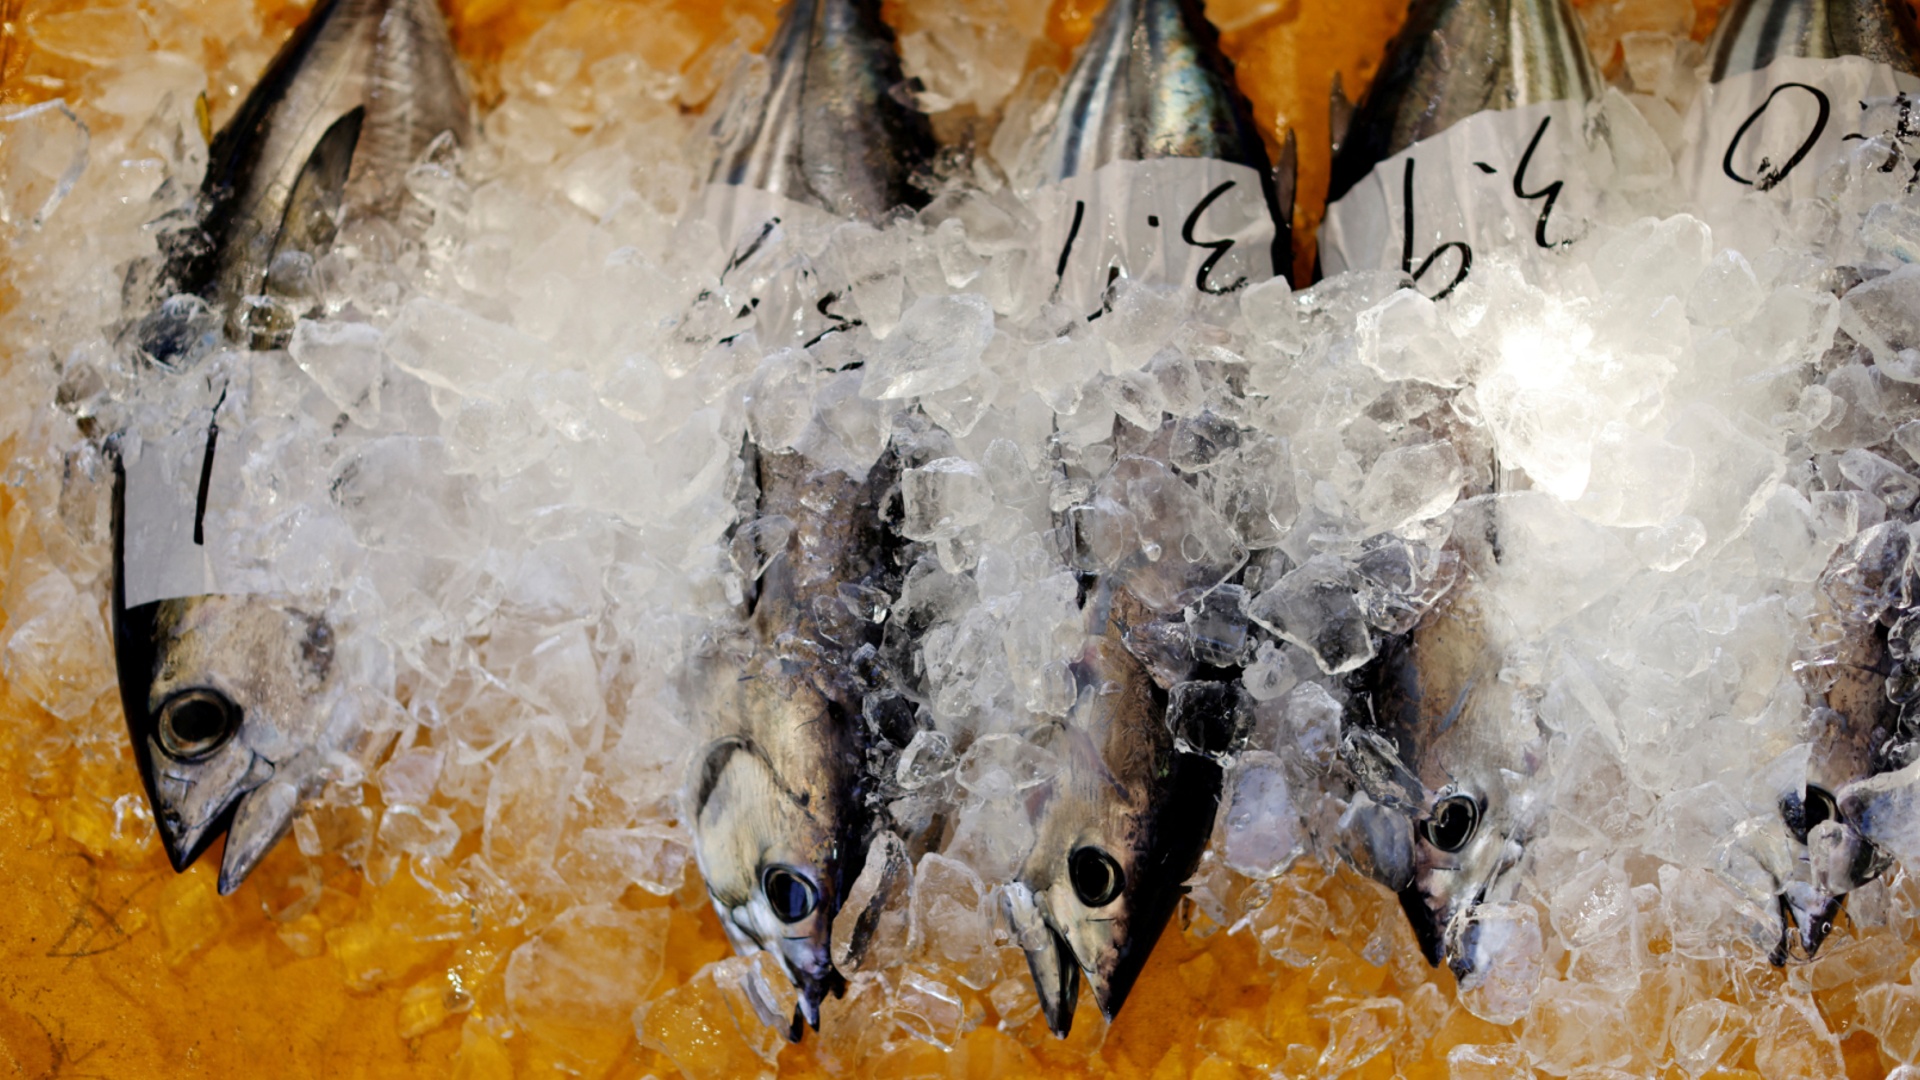 Россия рассмотрит вопрос о запрете импорта морепродуктов из Японии